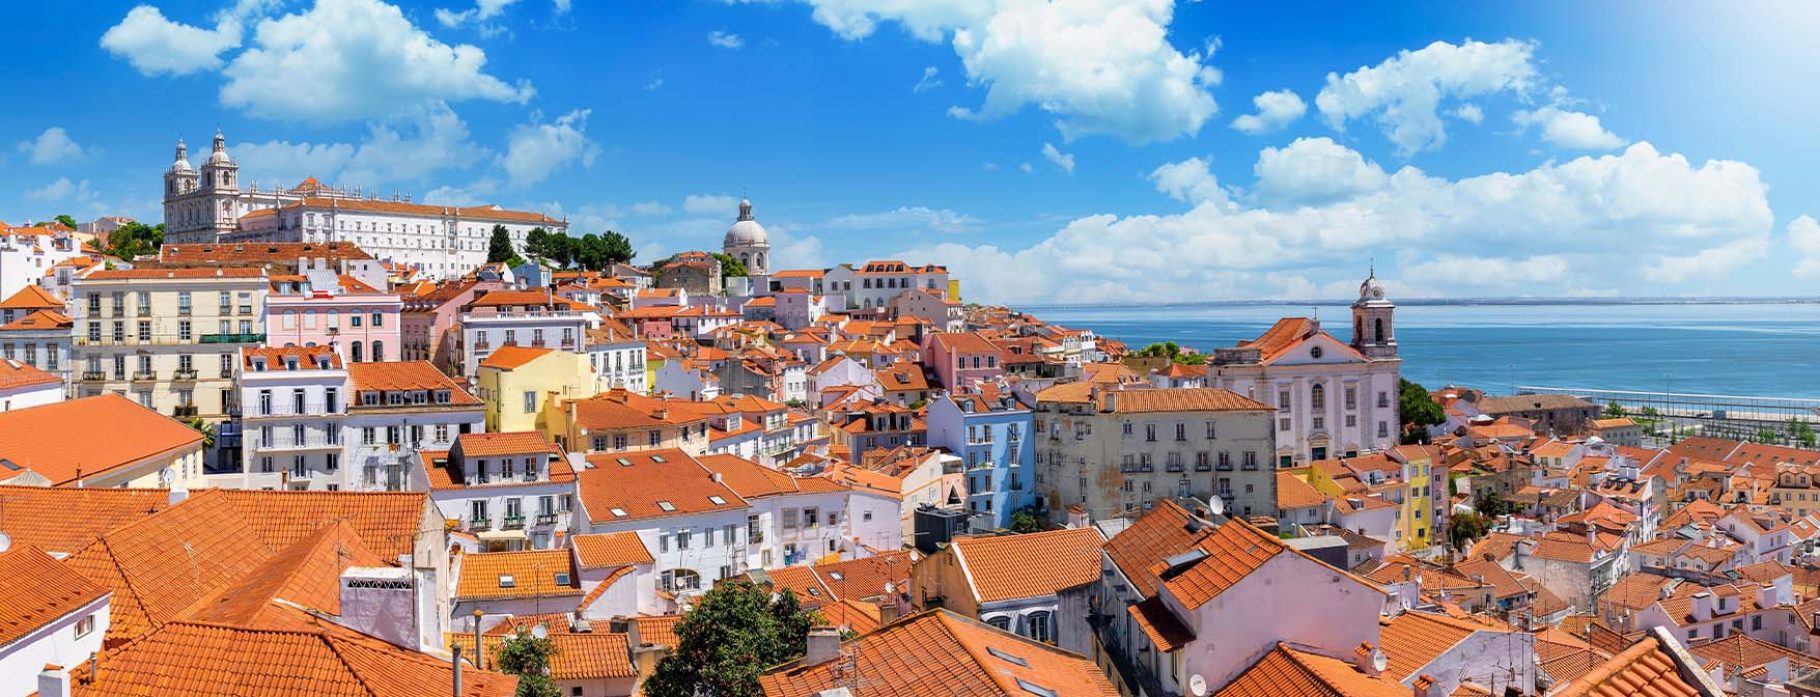 9 DAY A PORTRAIT OF PORTUGAL: HISTORIC CITIES & QUAINT VILLAGES